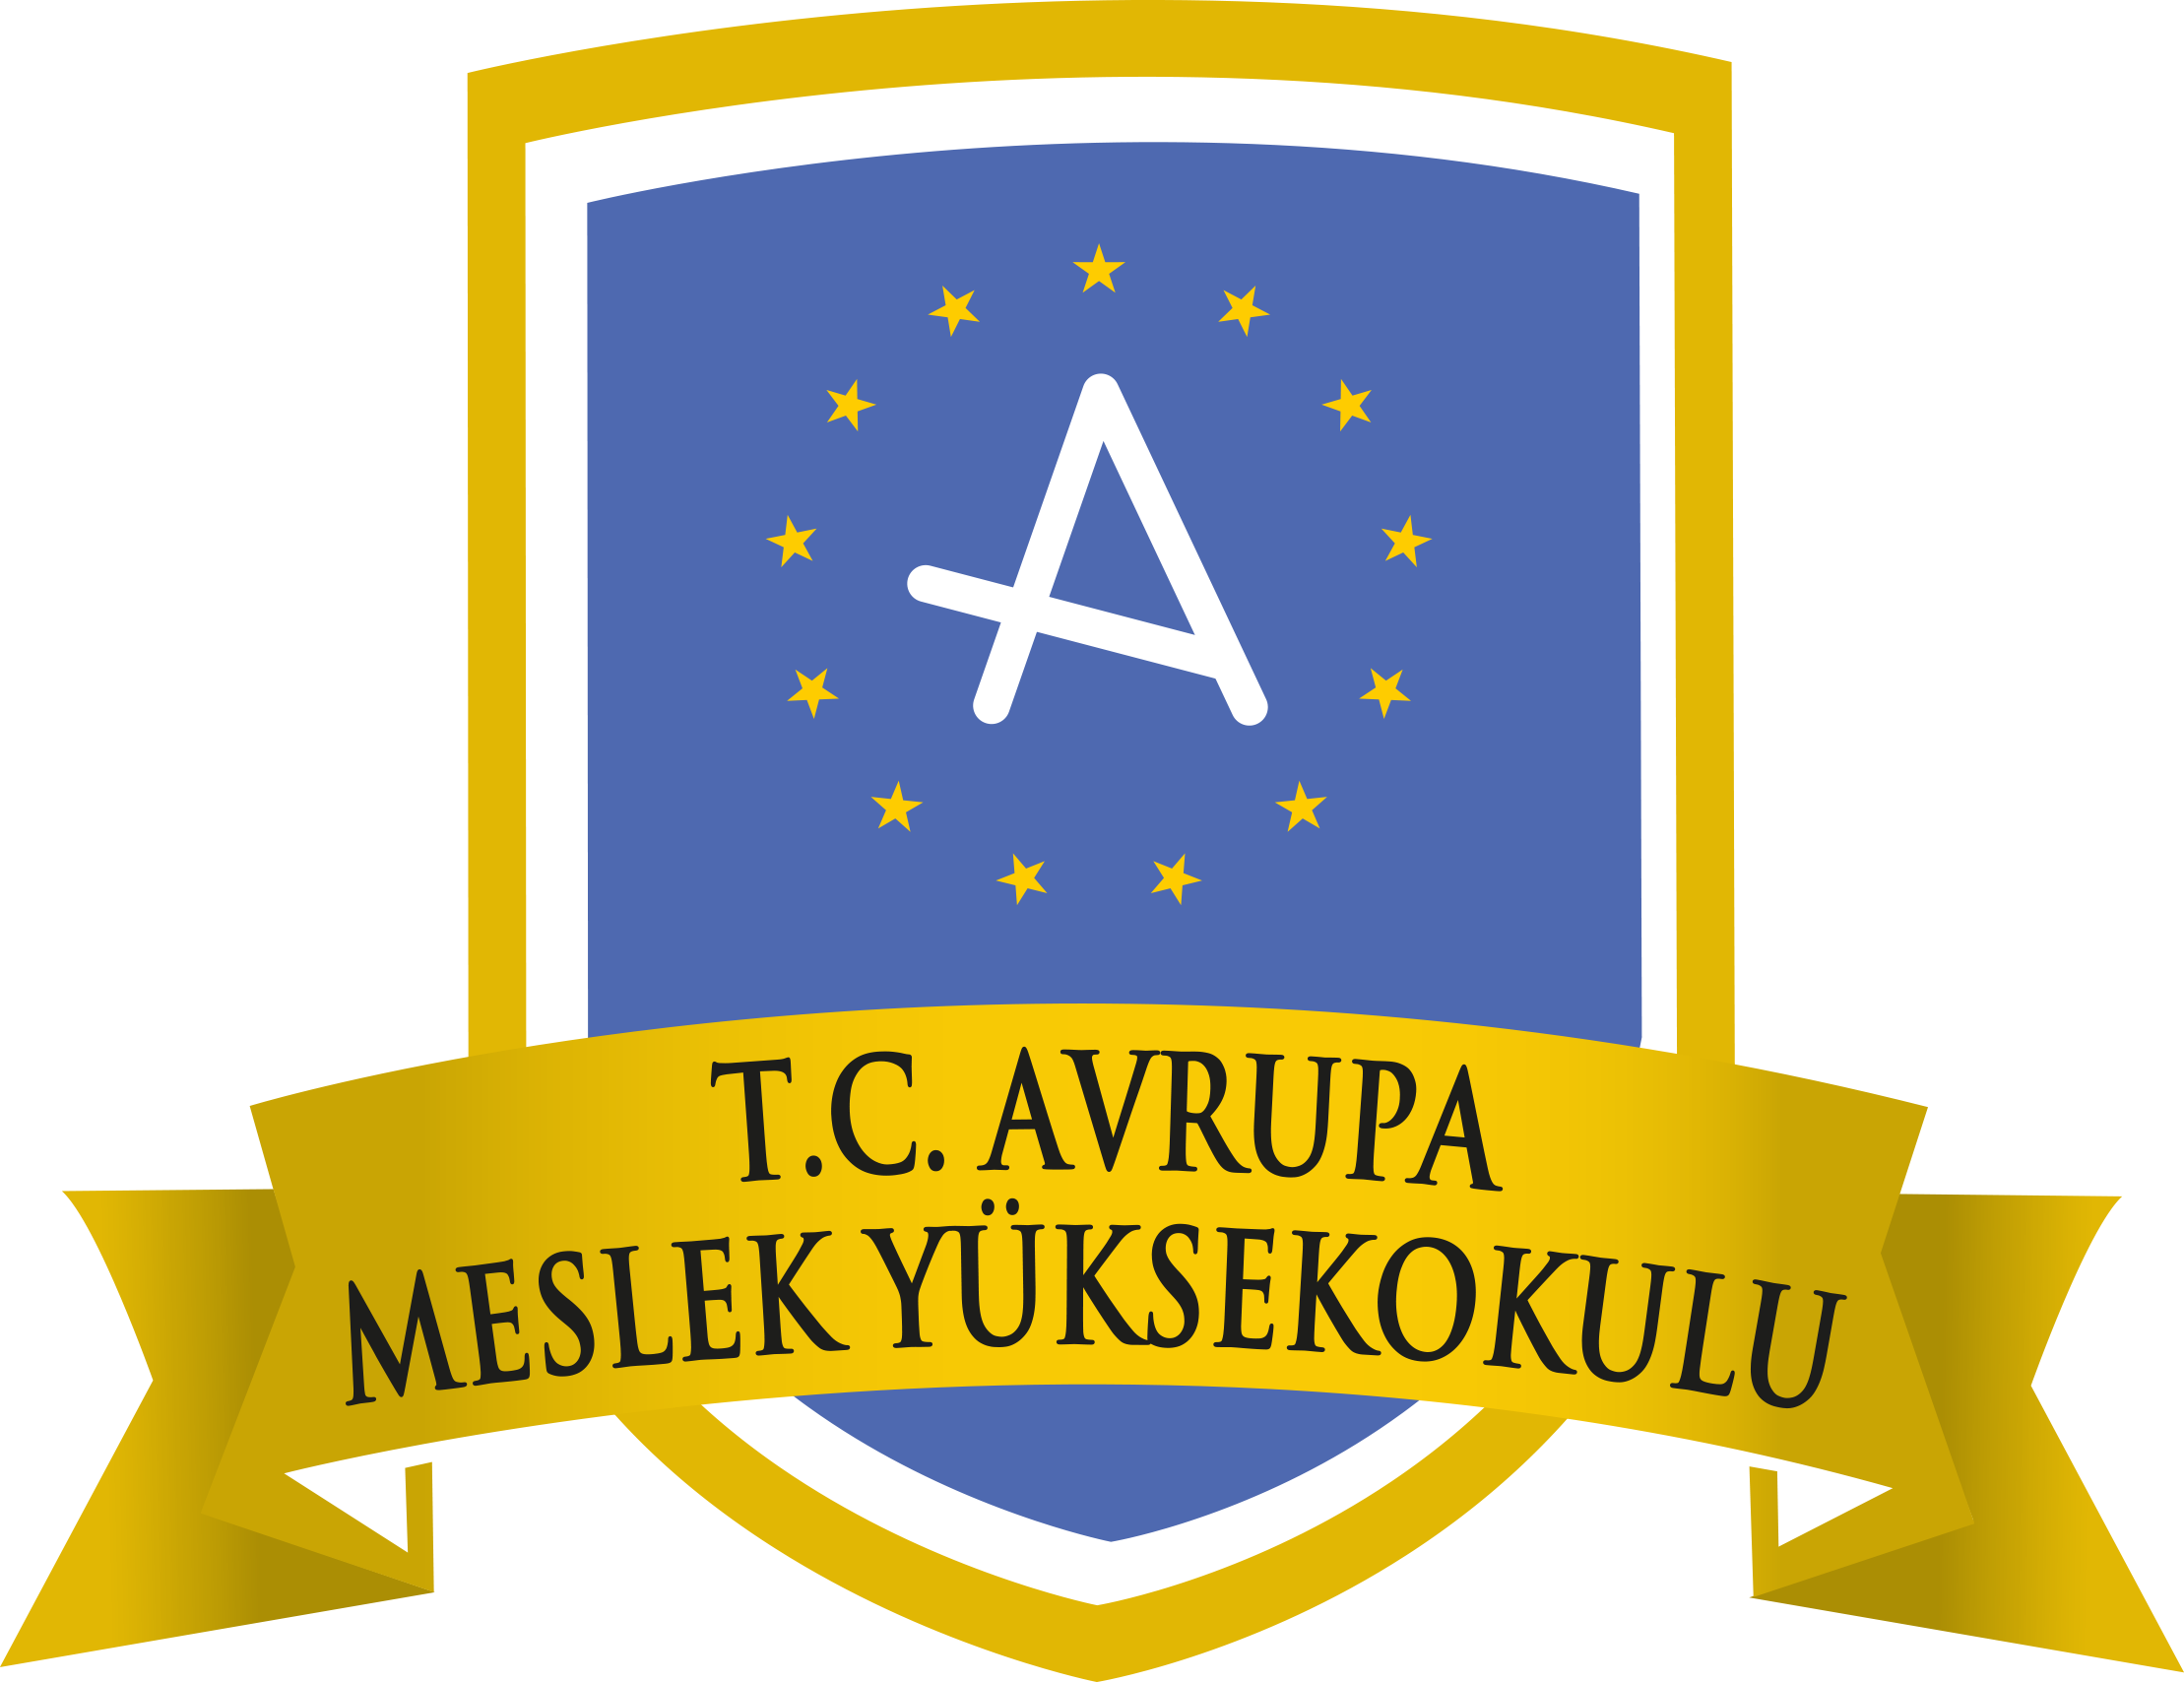 Avrupa Meslek Yüksekokulu İlk ve Acil Yardım